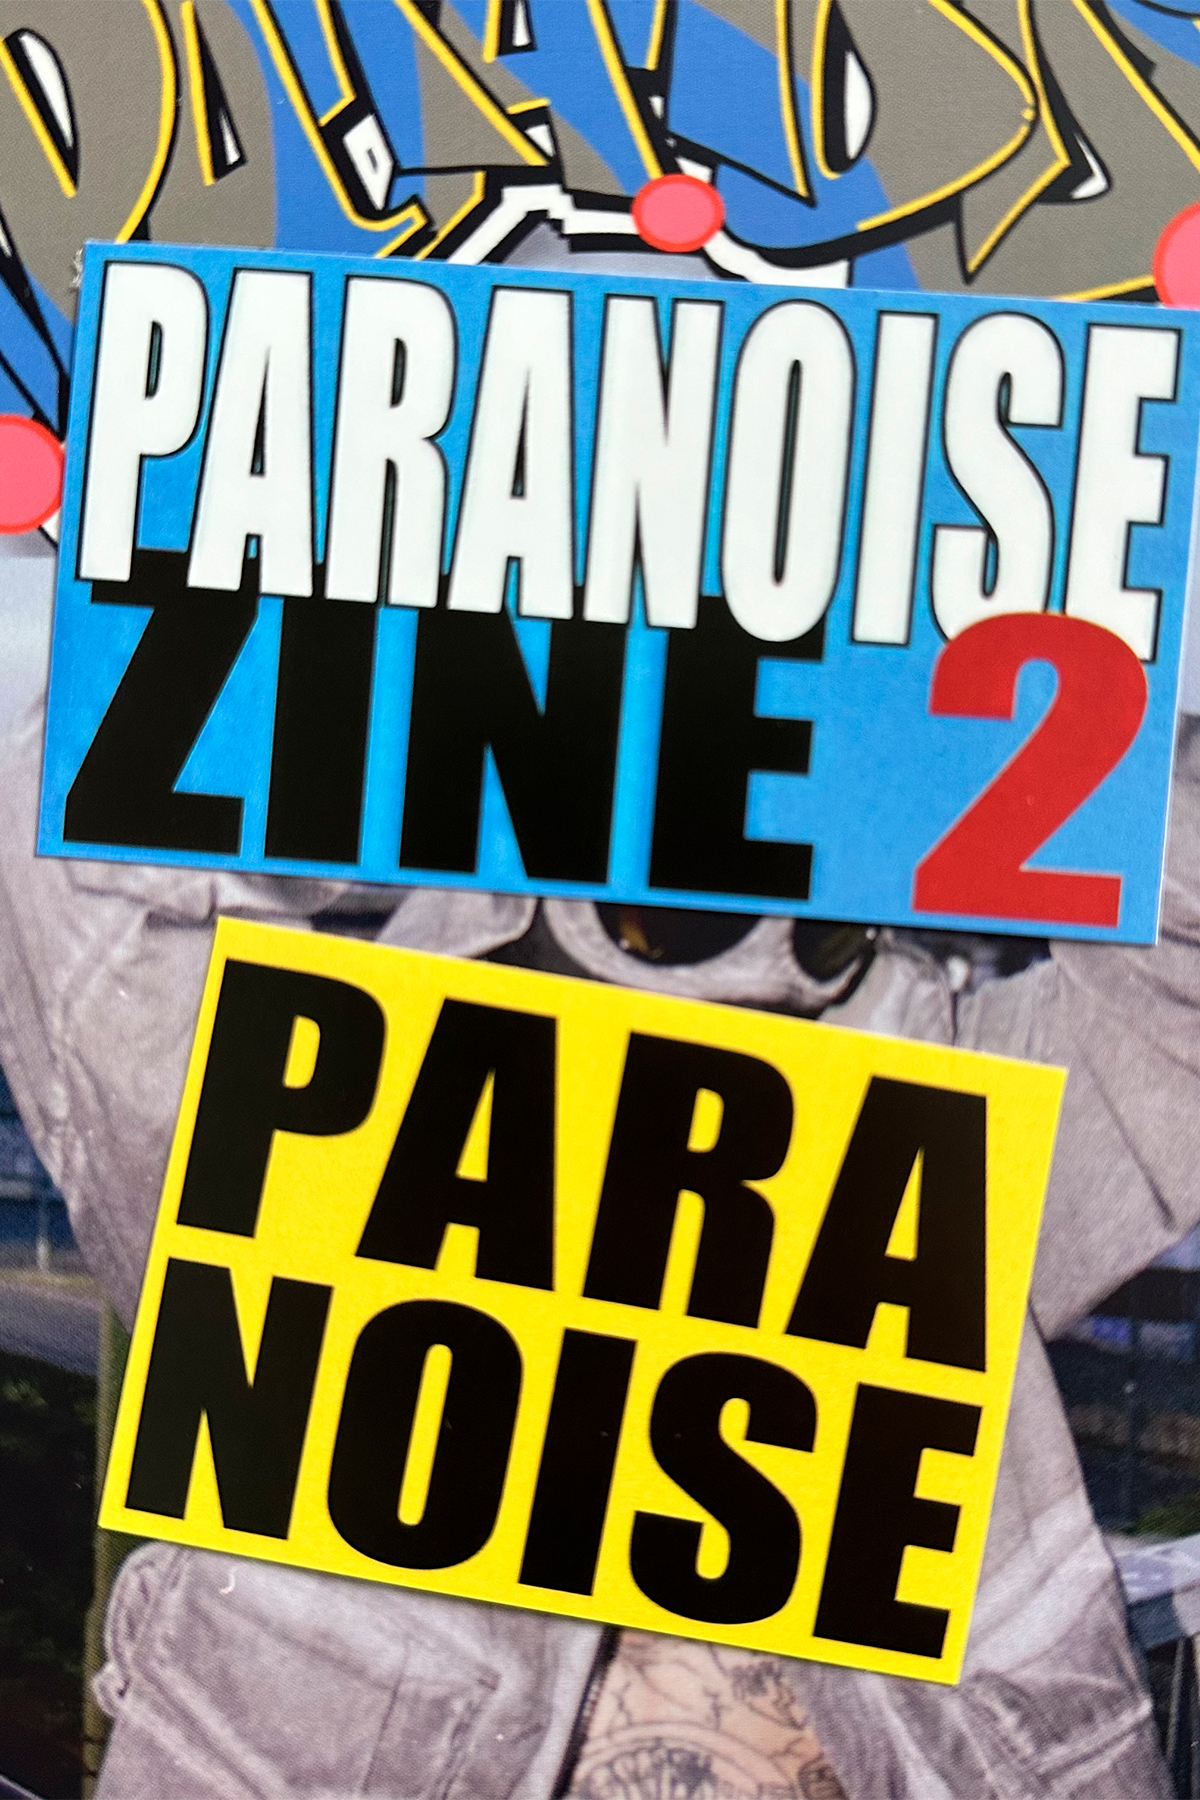 PARANOISE ZINE 2 Magazine